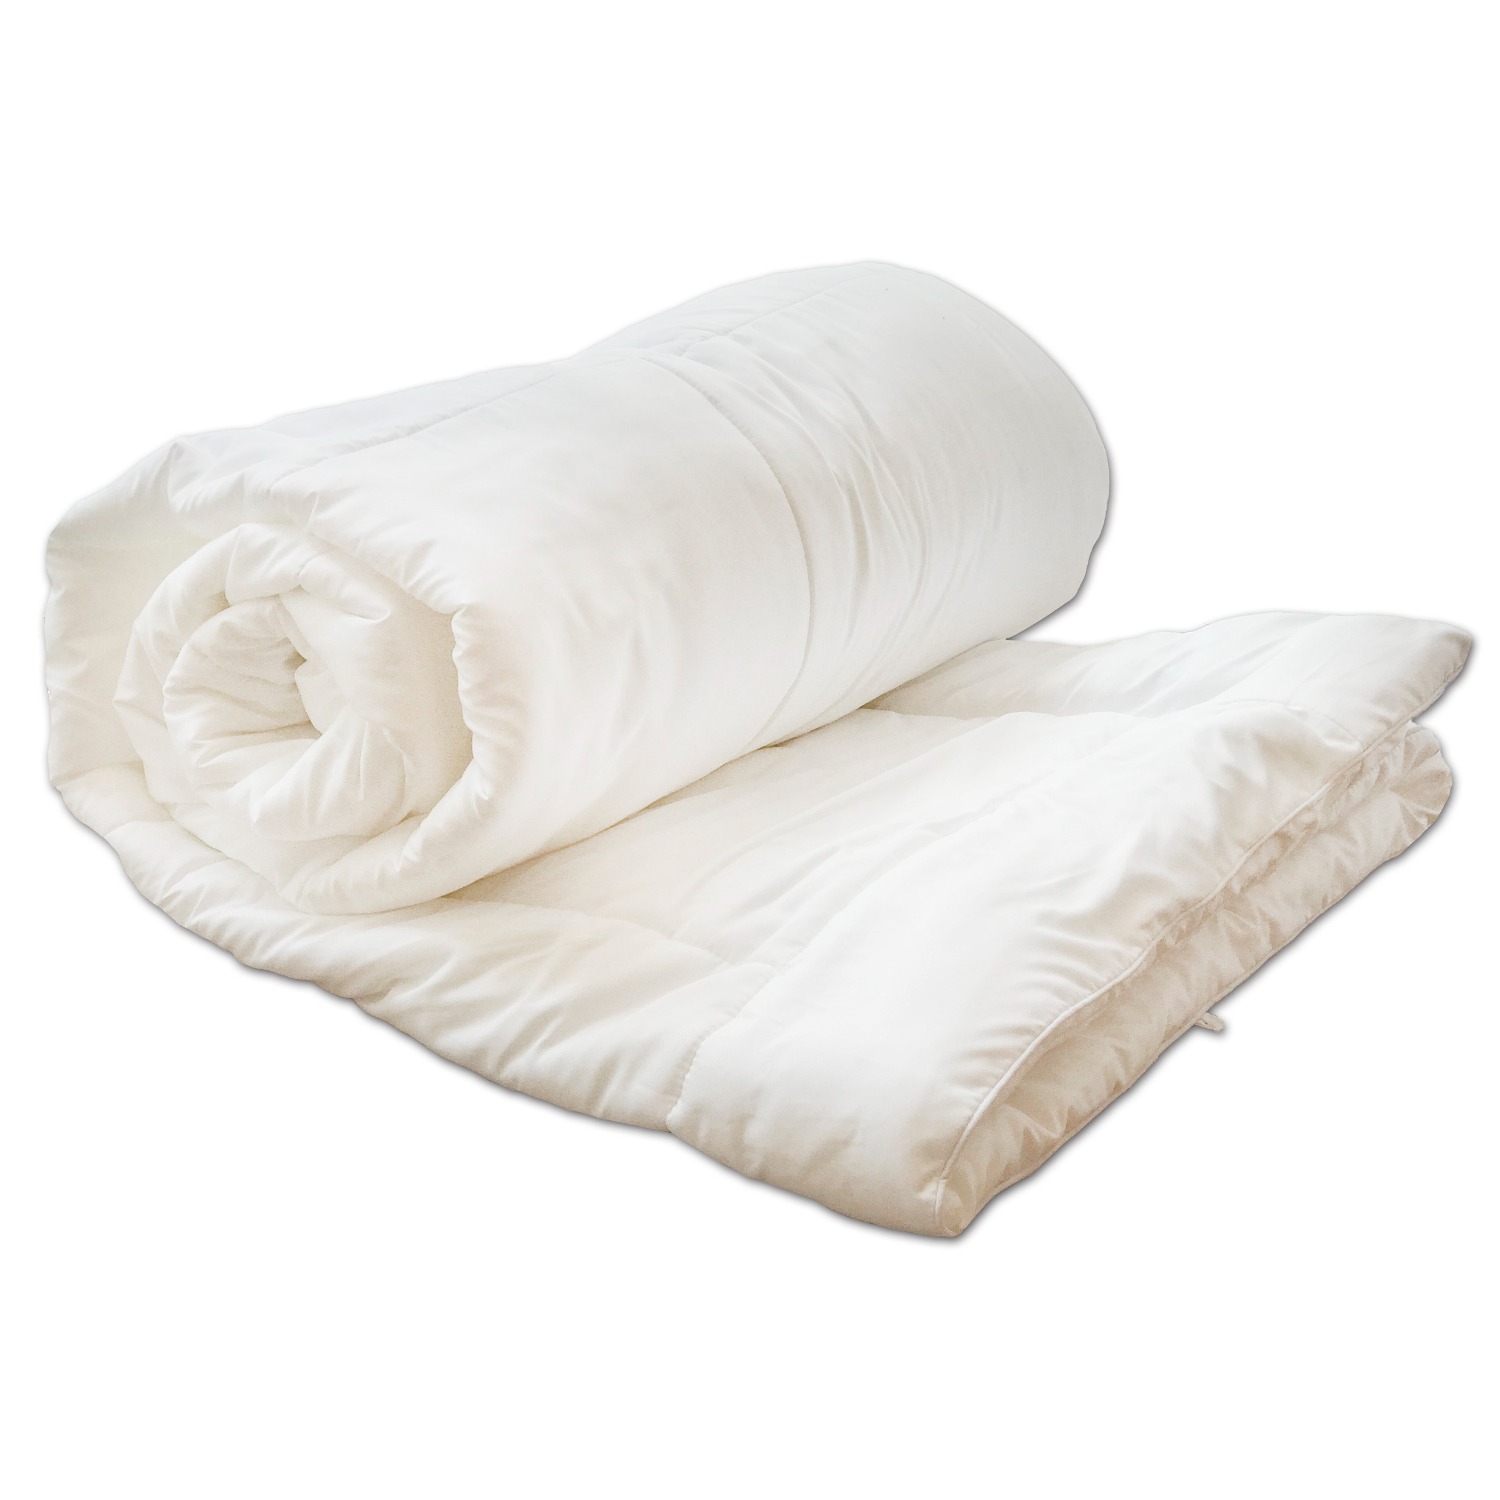 [a.o.b] Micro-fiber Bedding Cotton